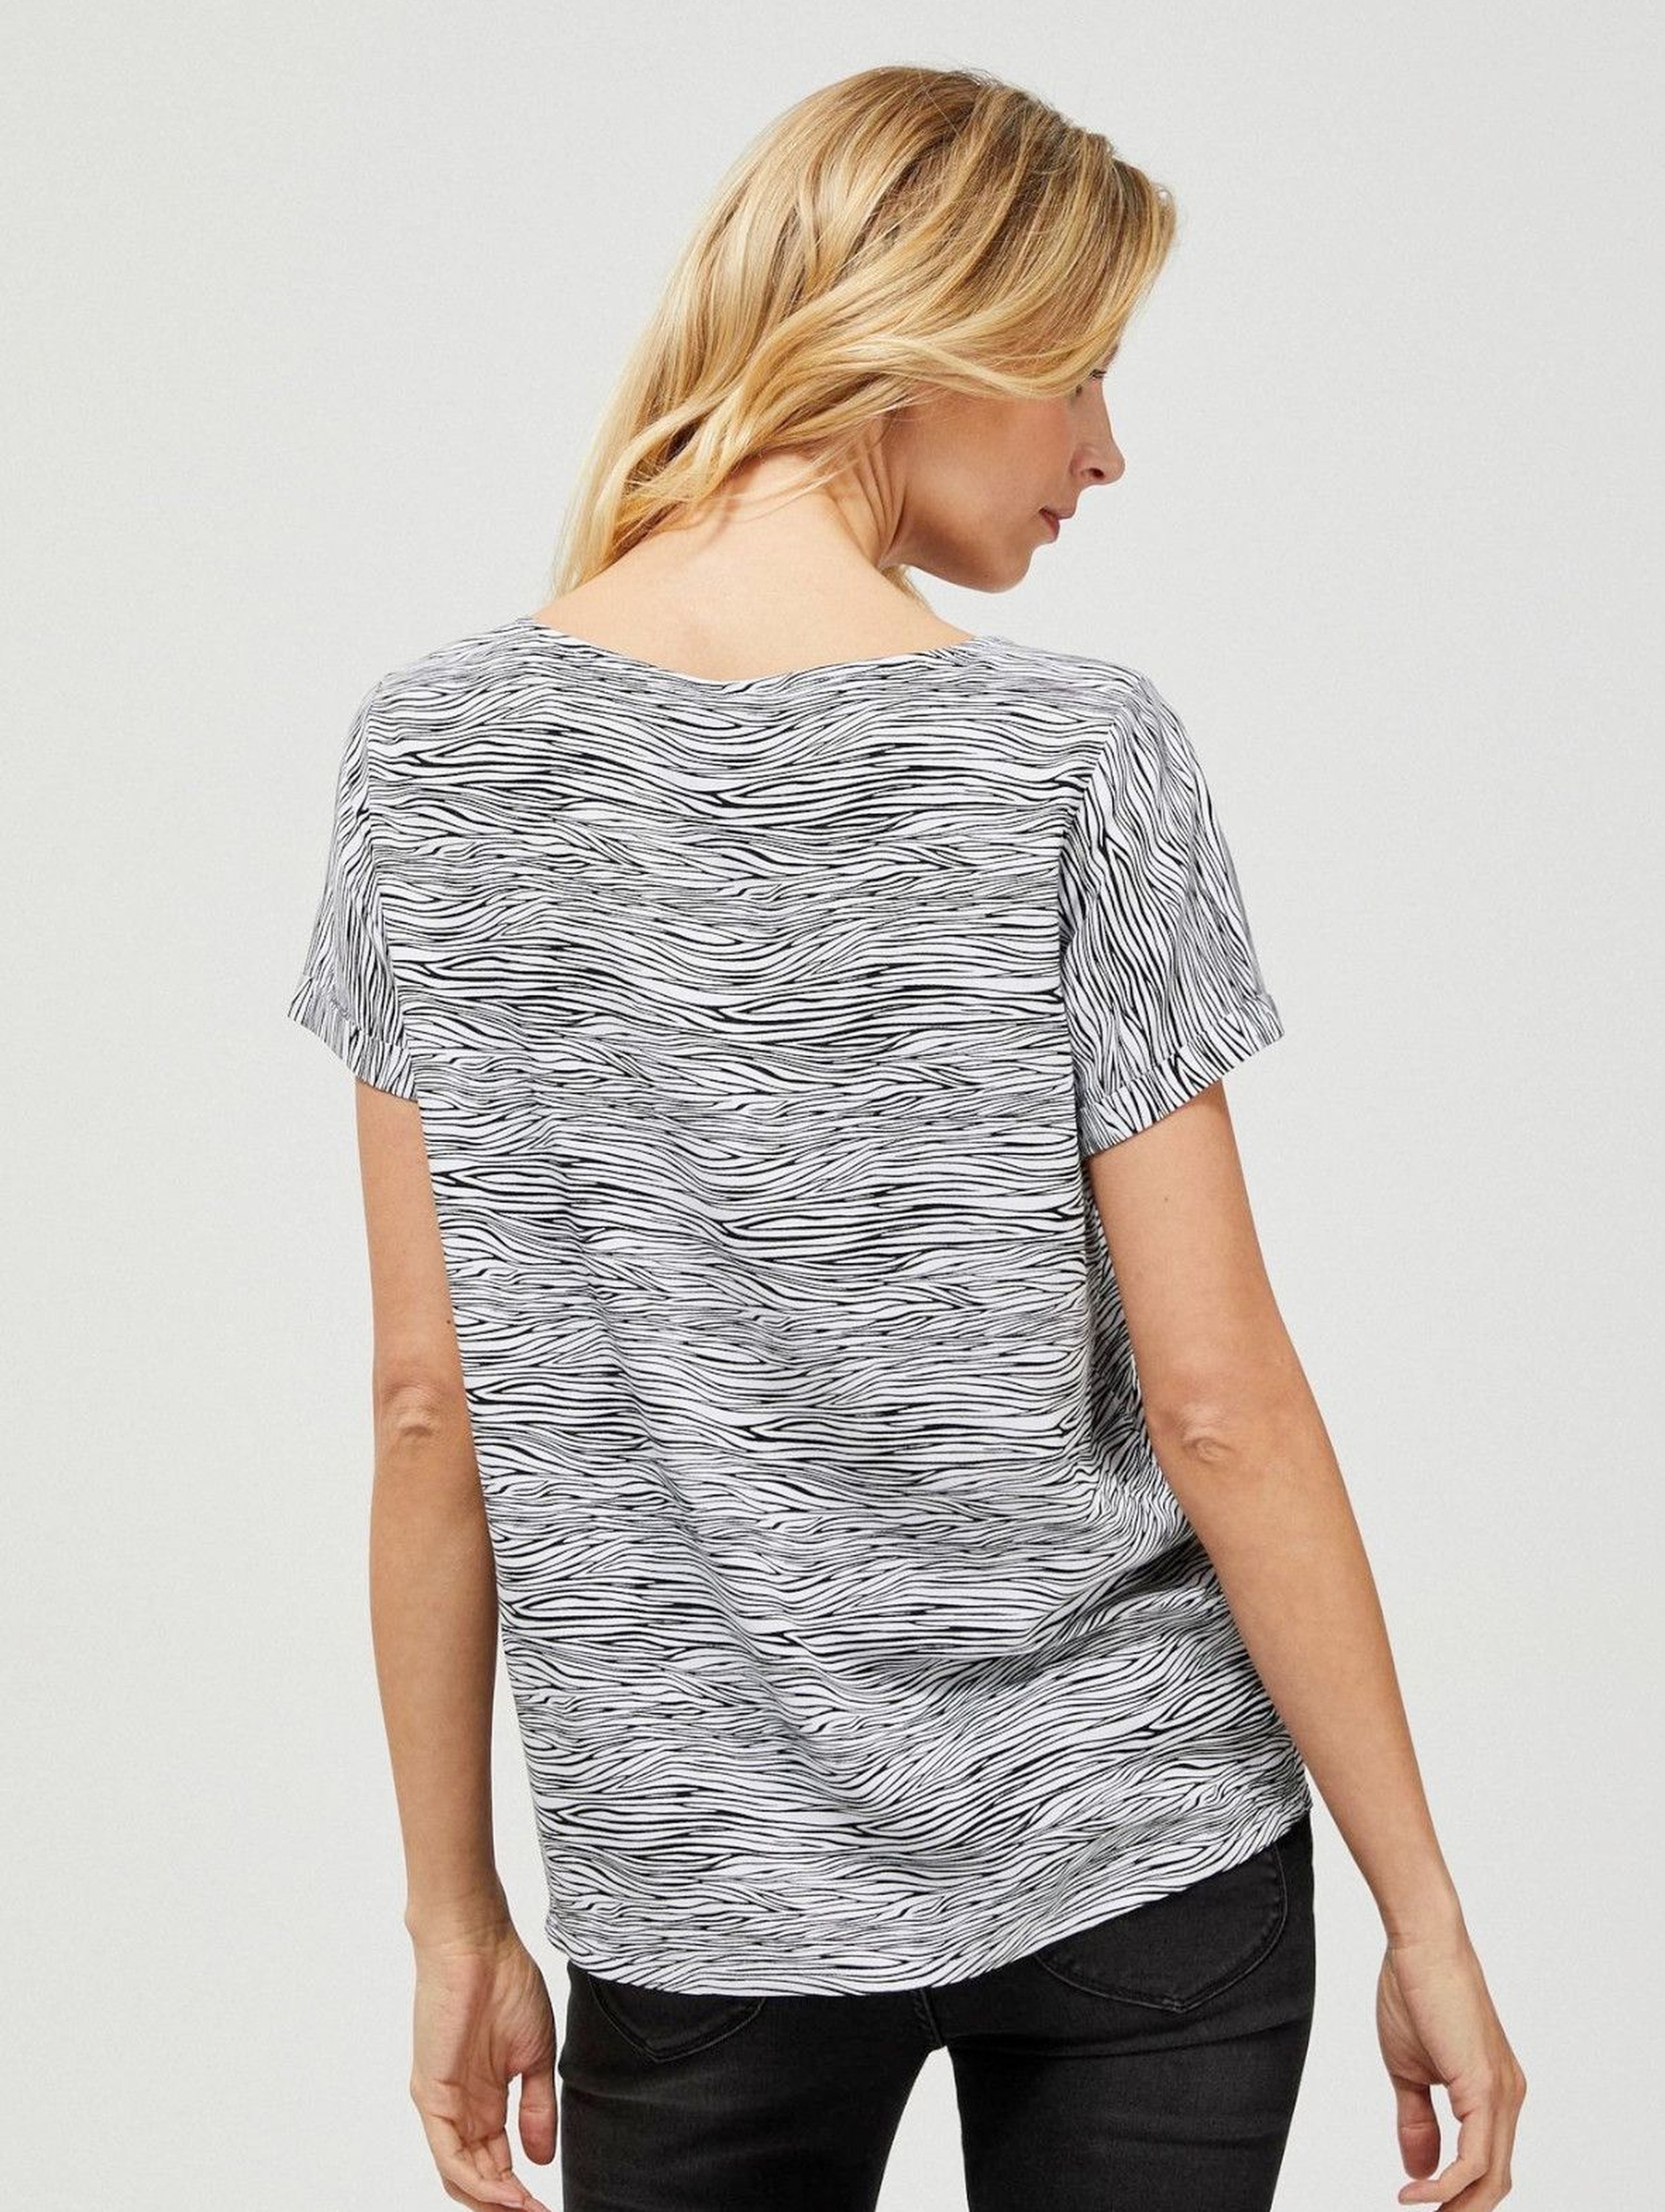 Bluzka damska koszulowa na krótki rękaw wzór zebry biało-czarna